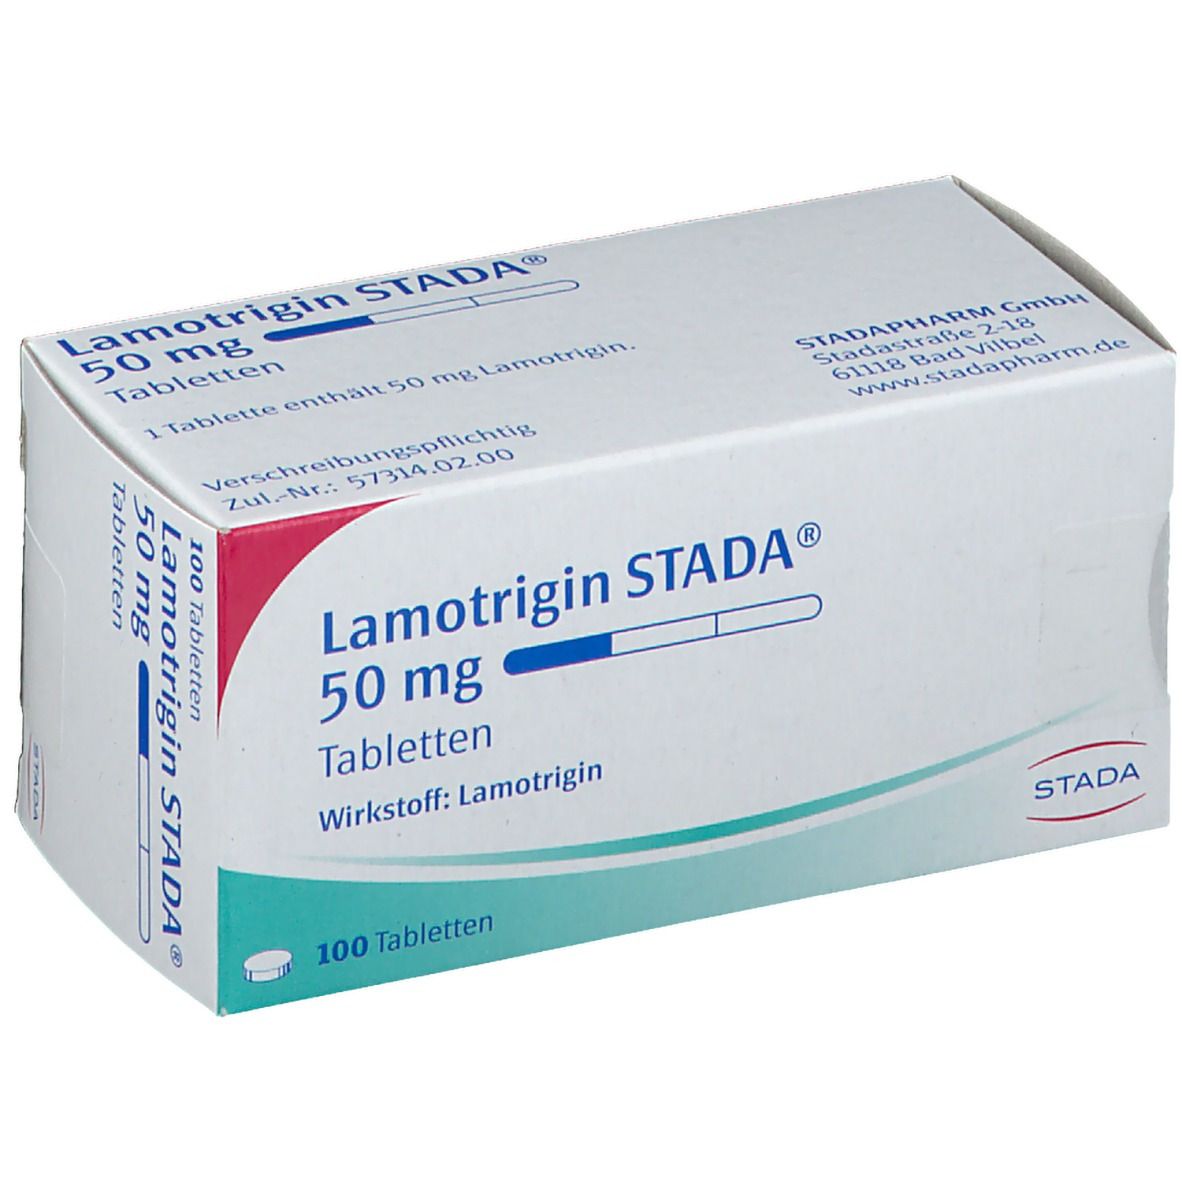 Lamotrigin STADA® 50 mg